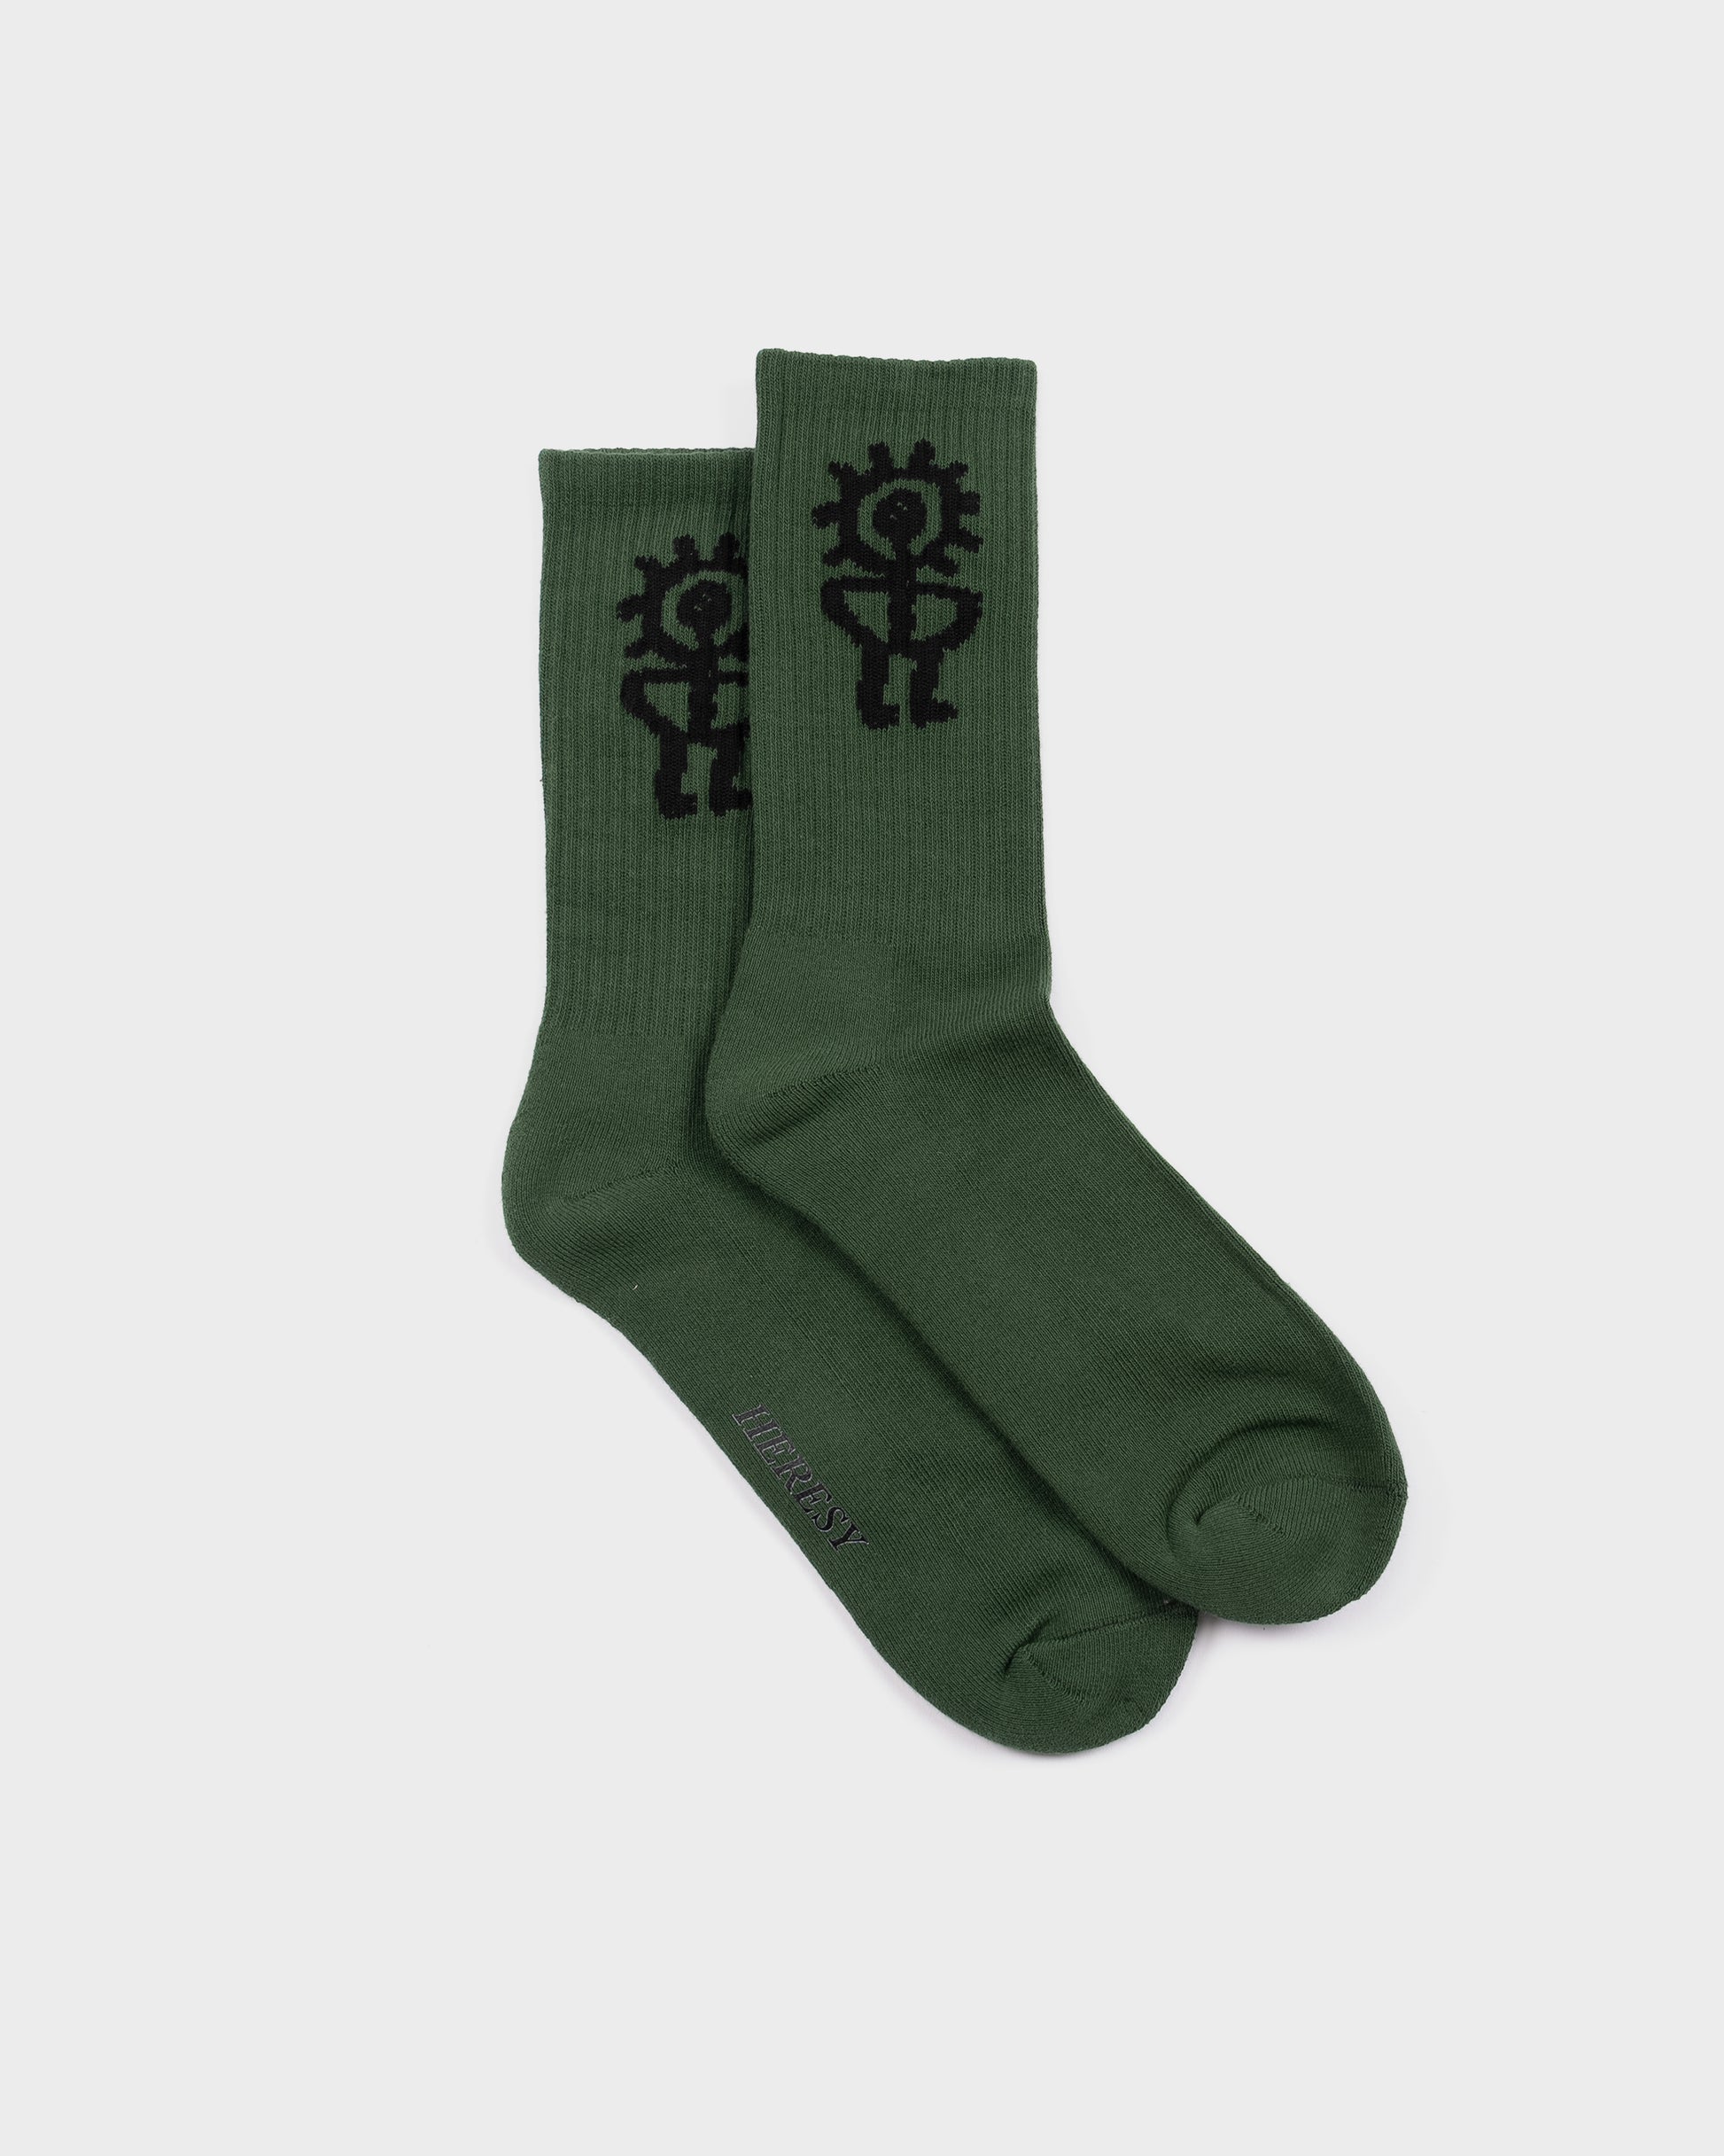 Heresy Sungod Socks - Green